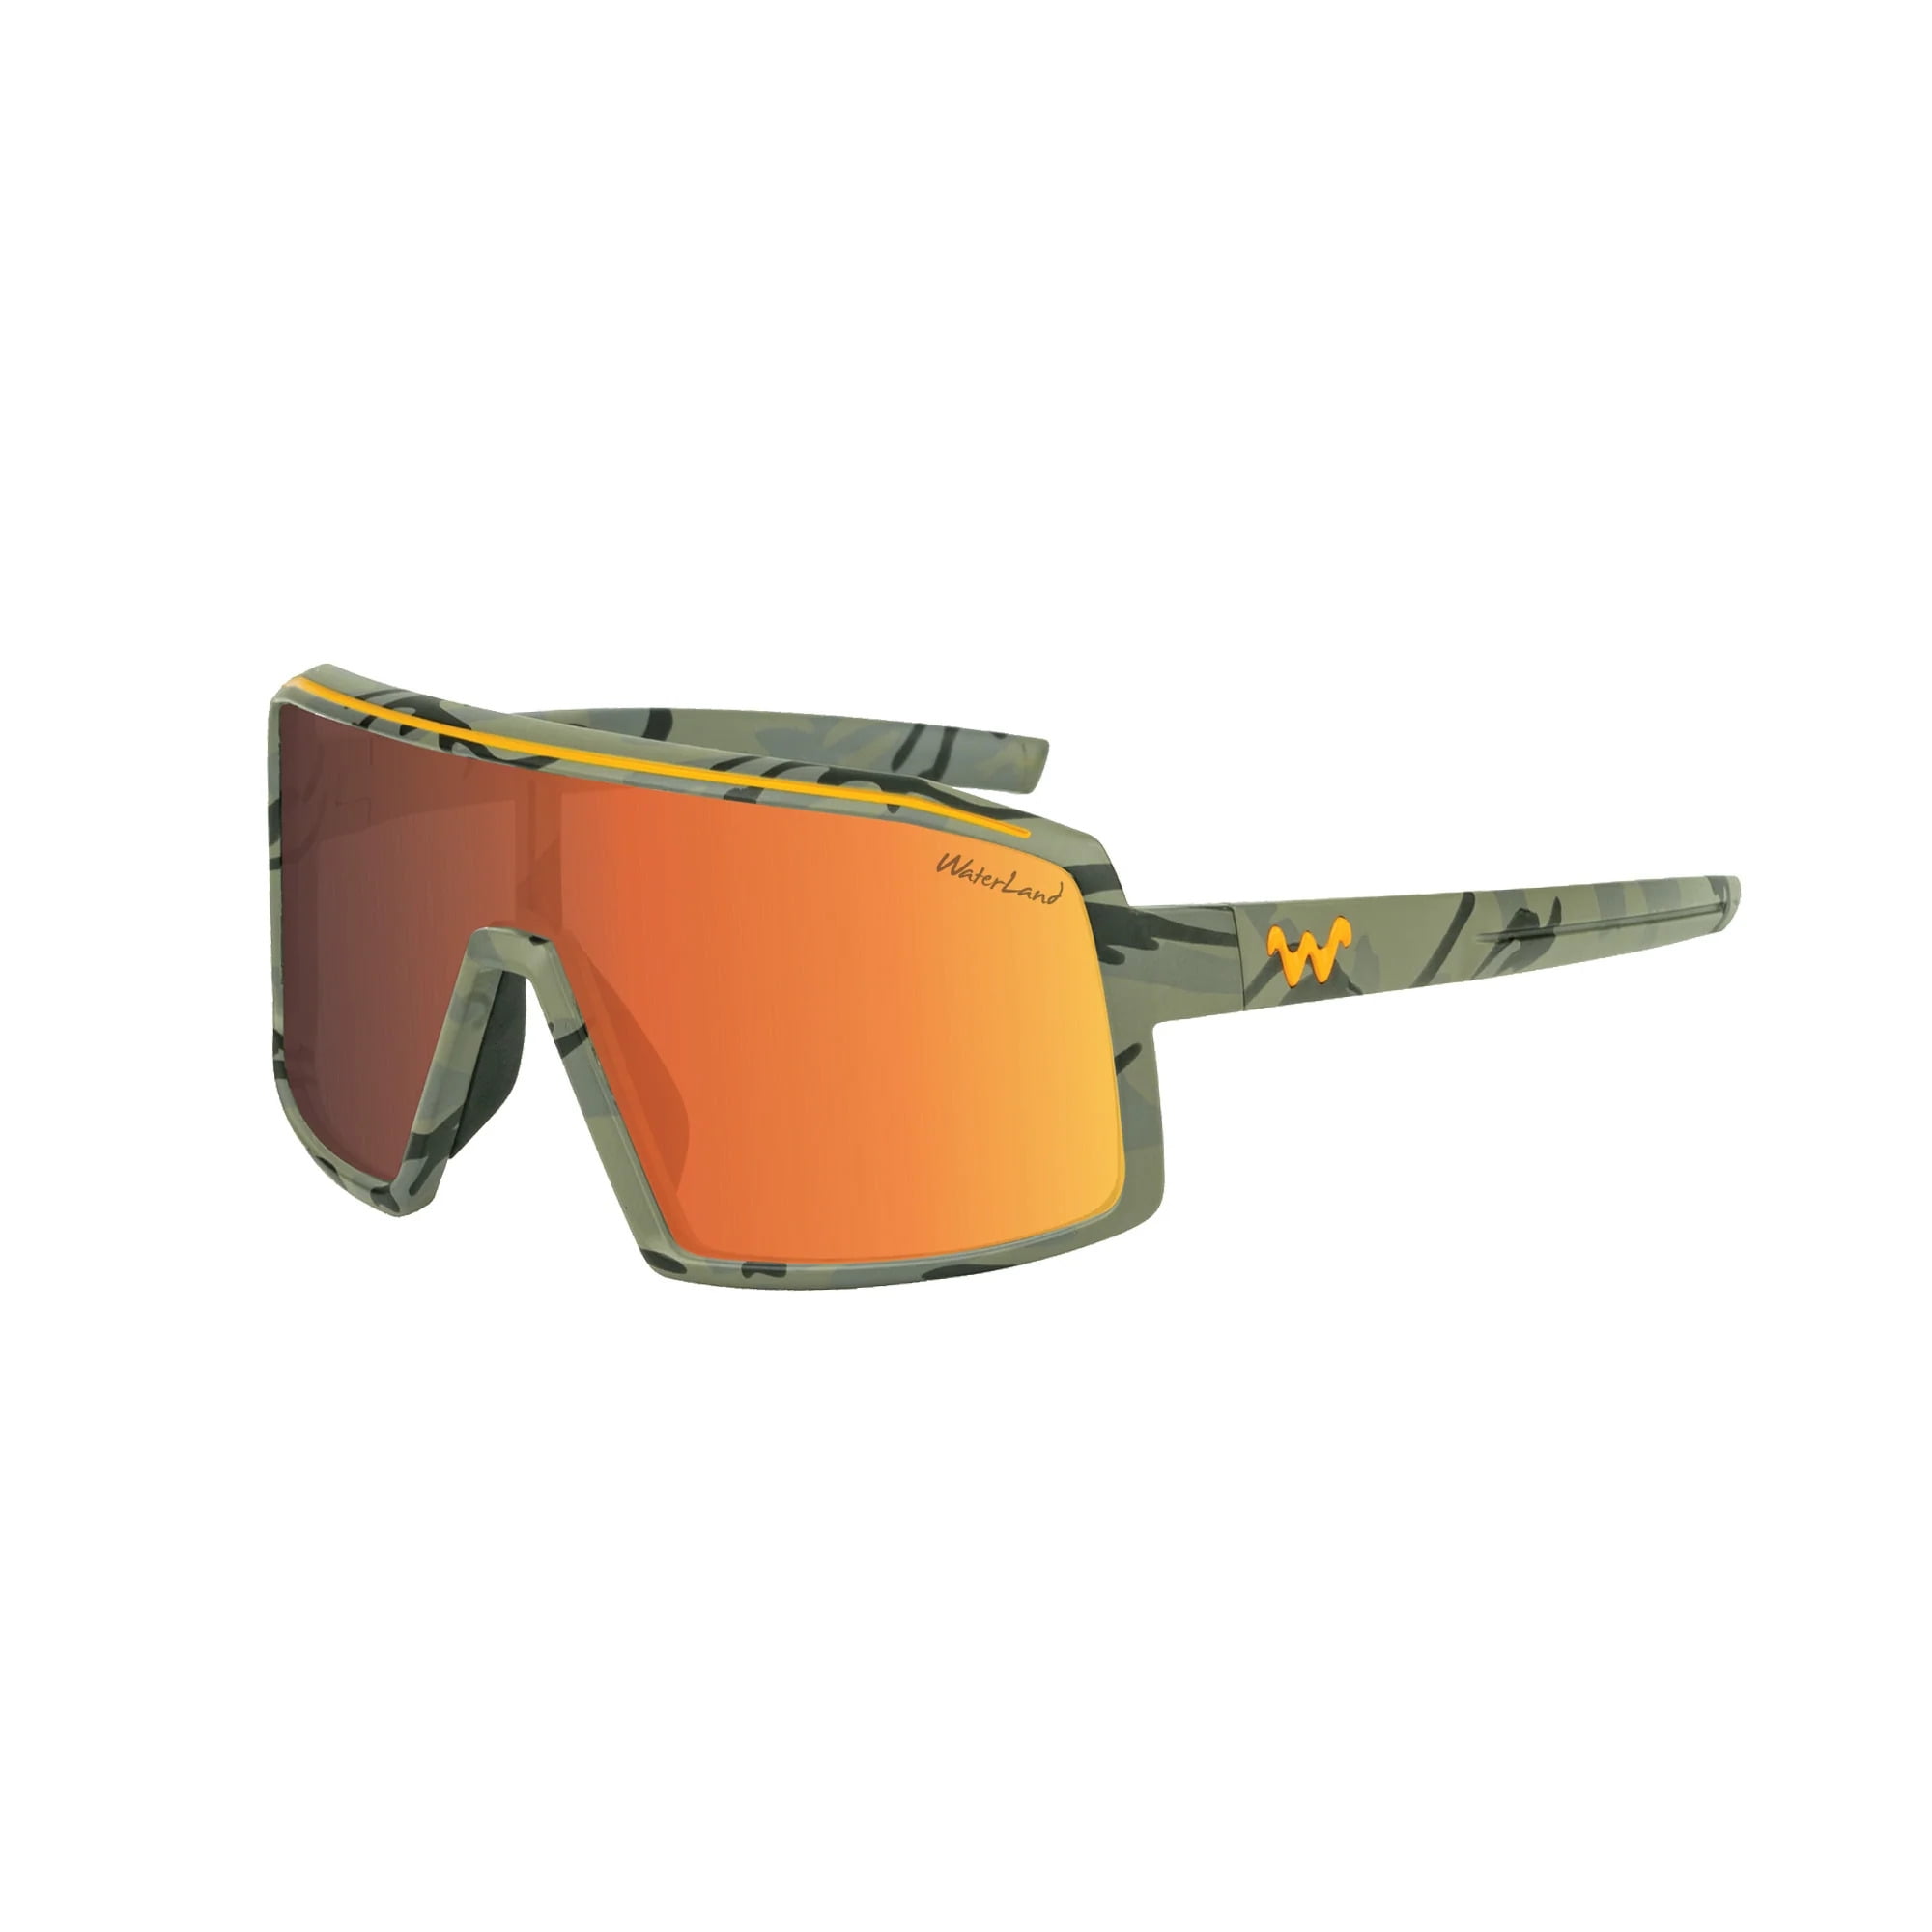 WaterLand Fishing Sunglasses- Cooker Series 